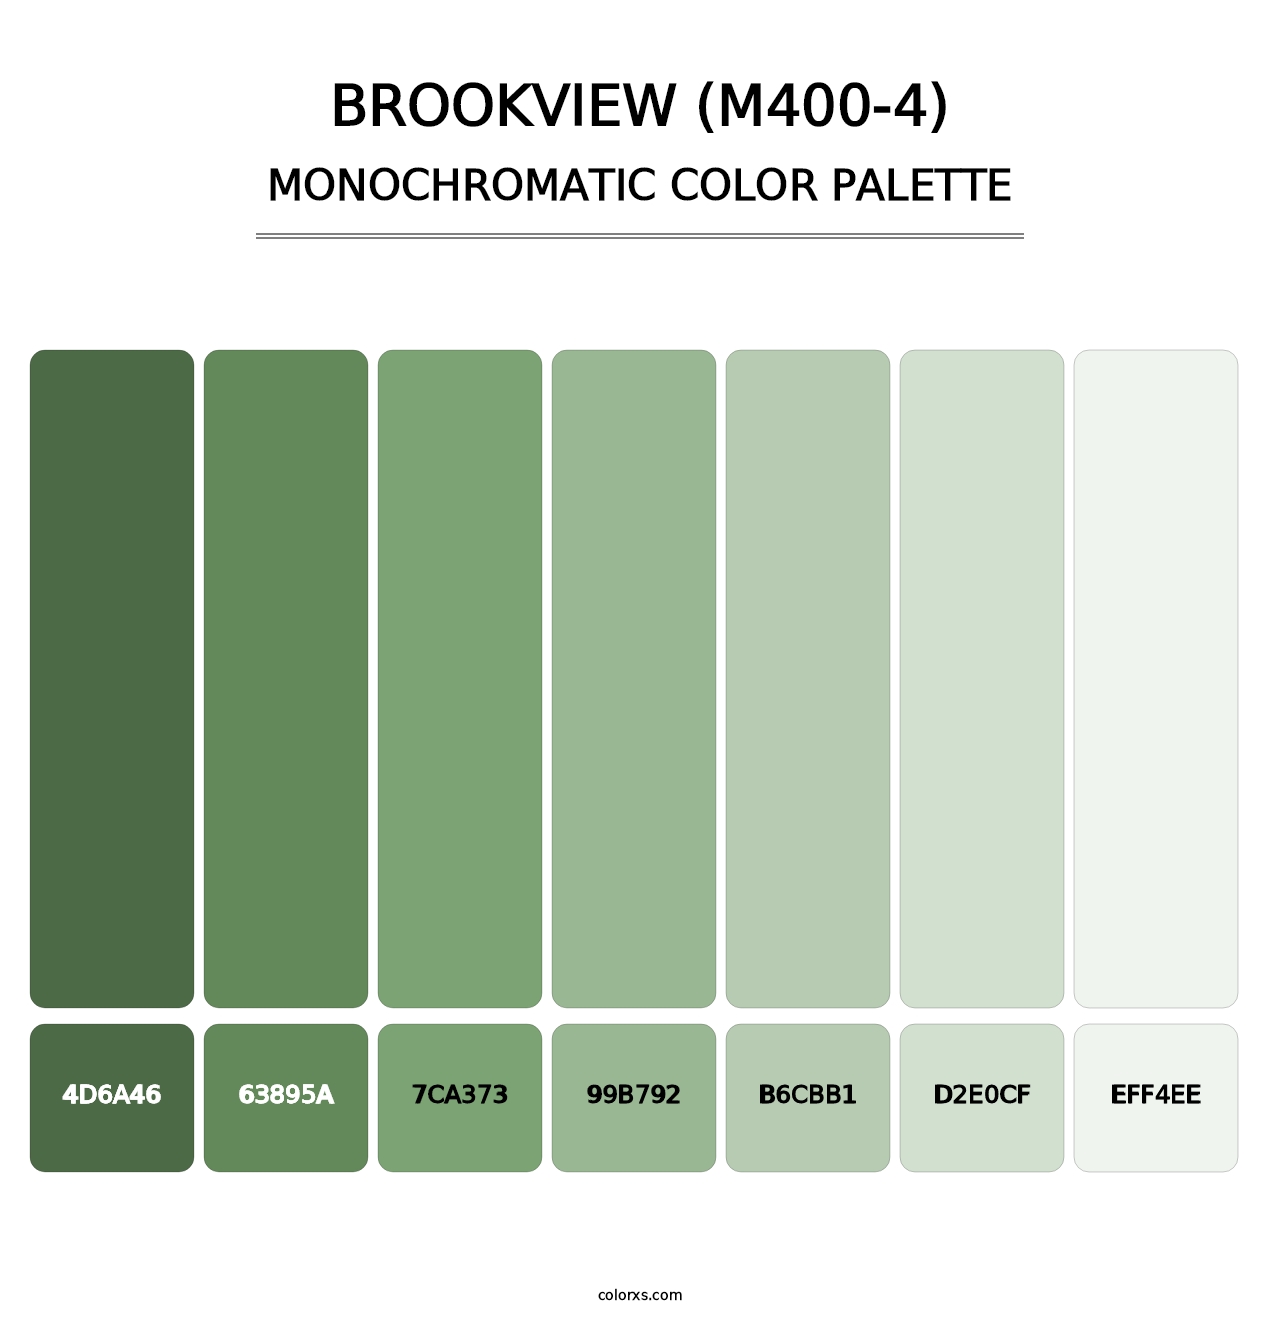 Brookview (M400-4) - Monochromatic Color Palette